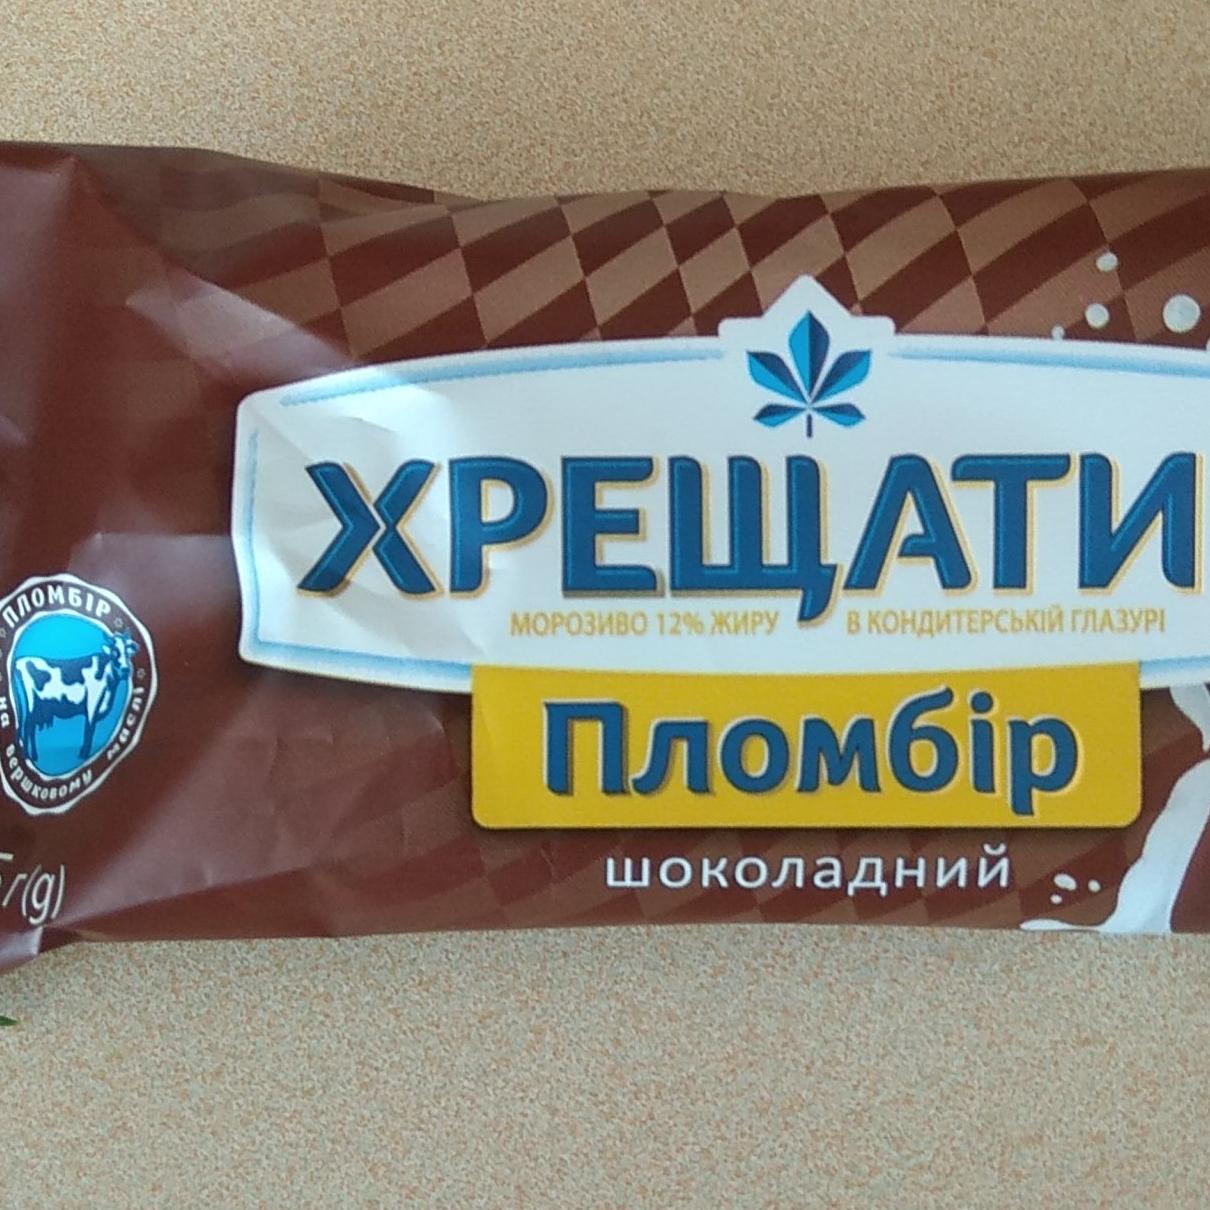 Фото - Морозиво шоколадне в кондитерській глазурі Пломбір Хрещатик